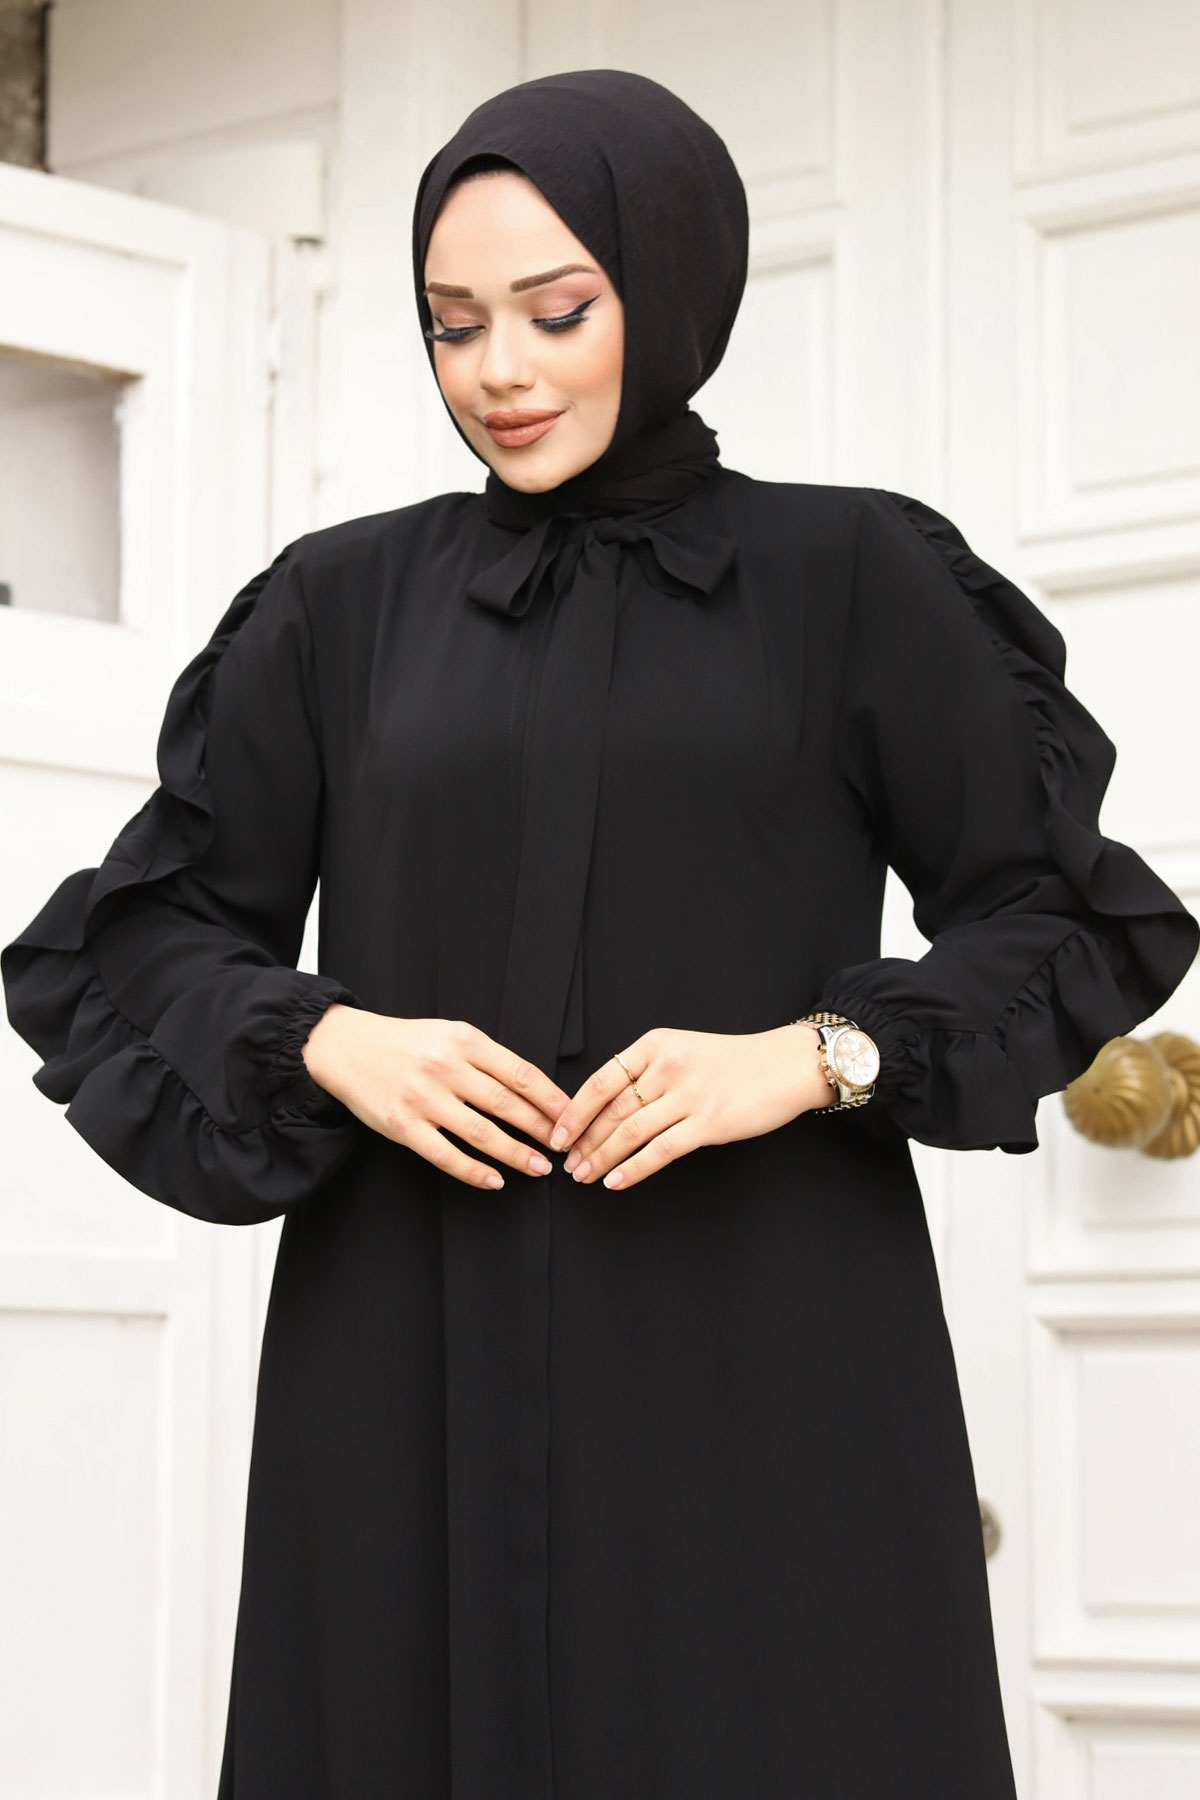 women dressing in islam